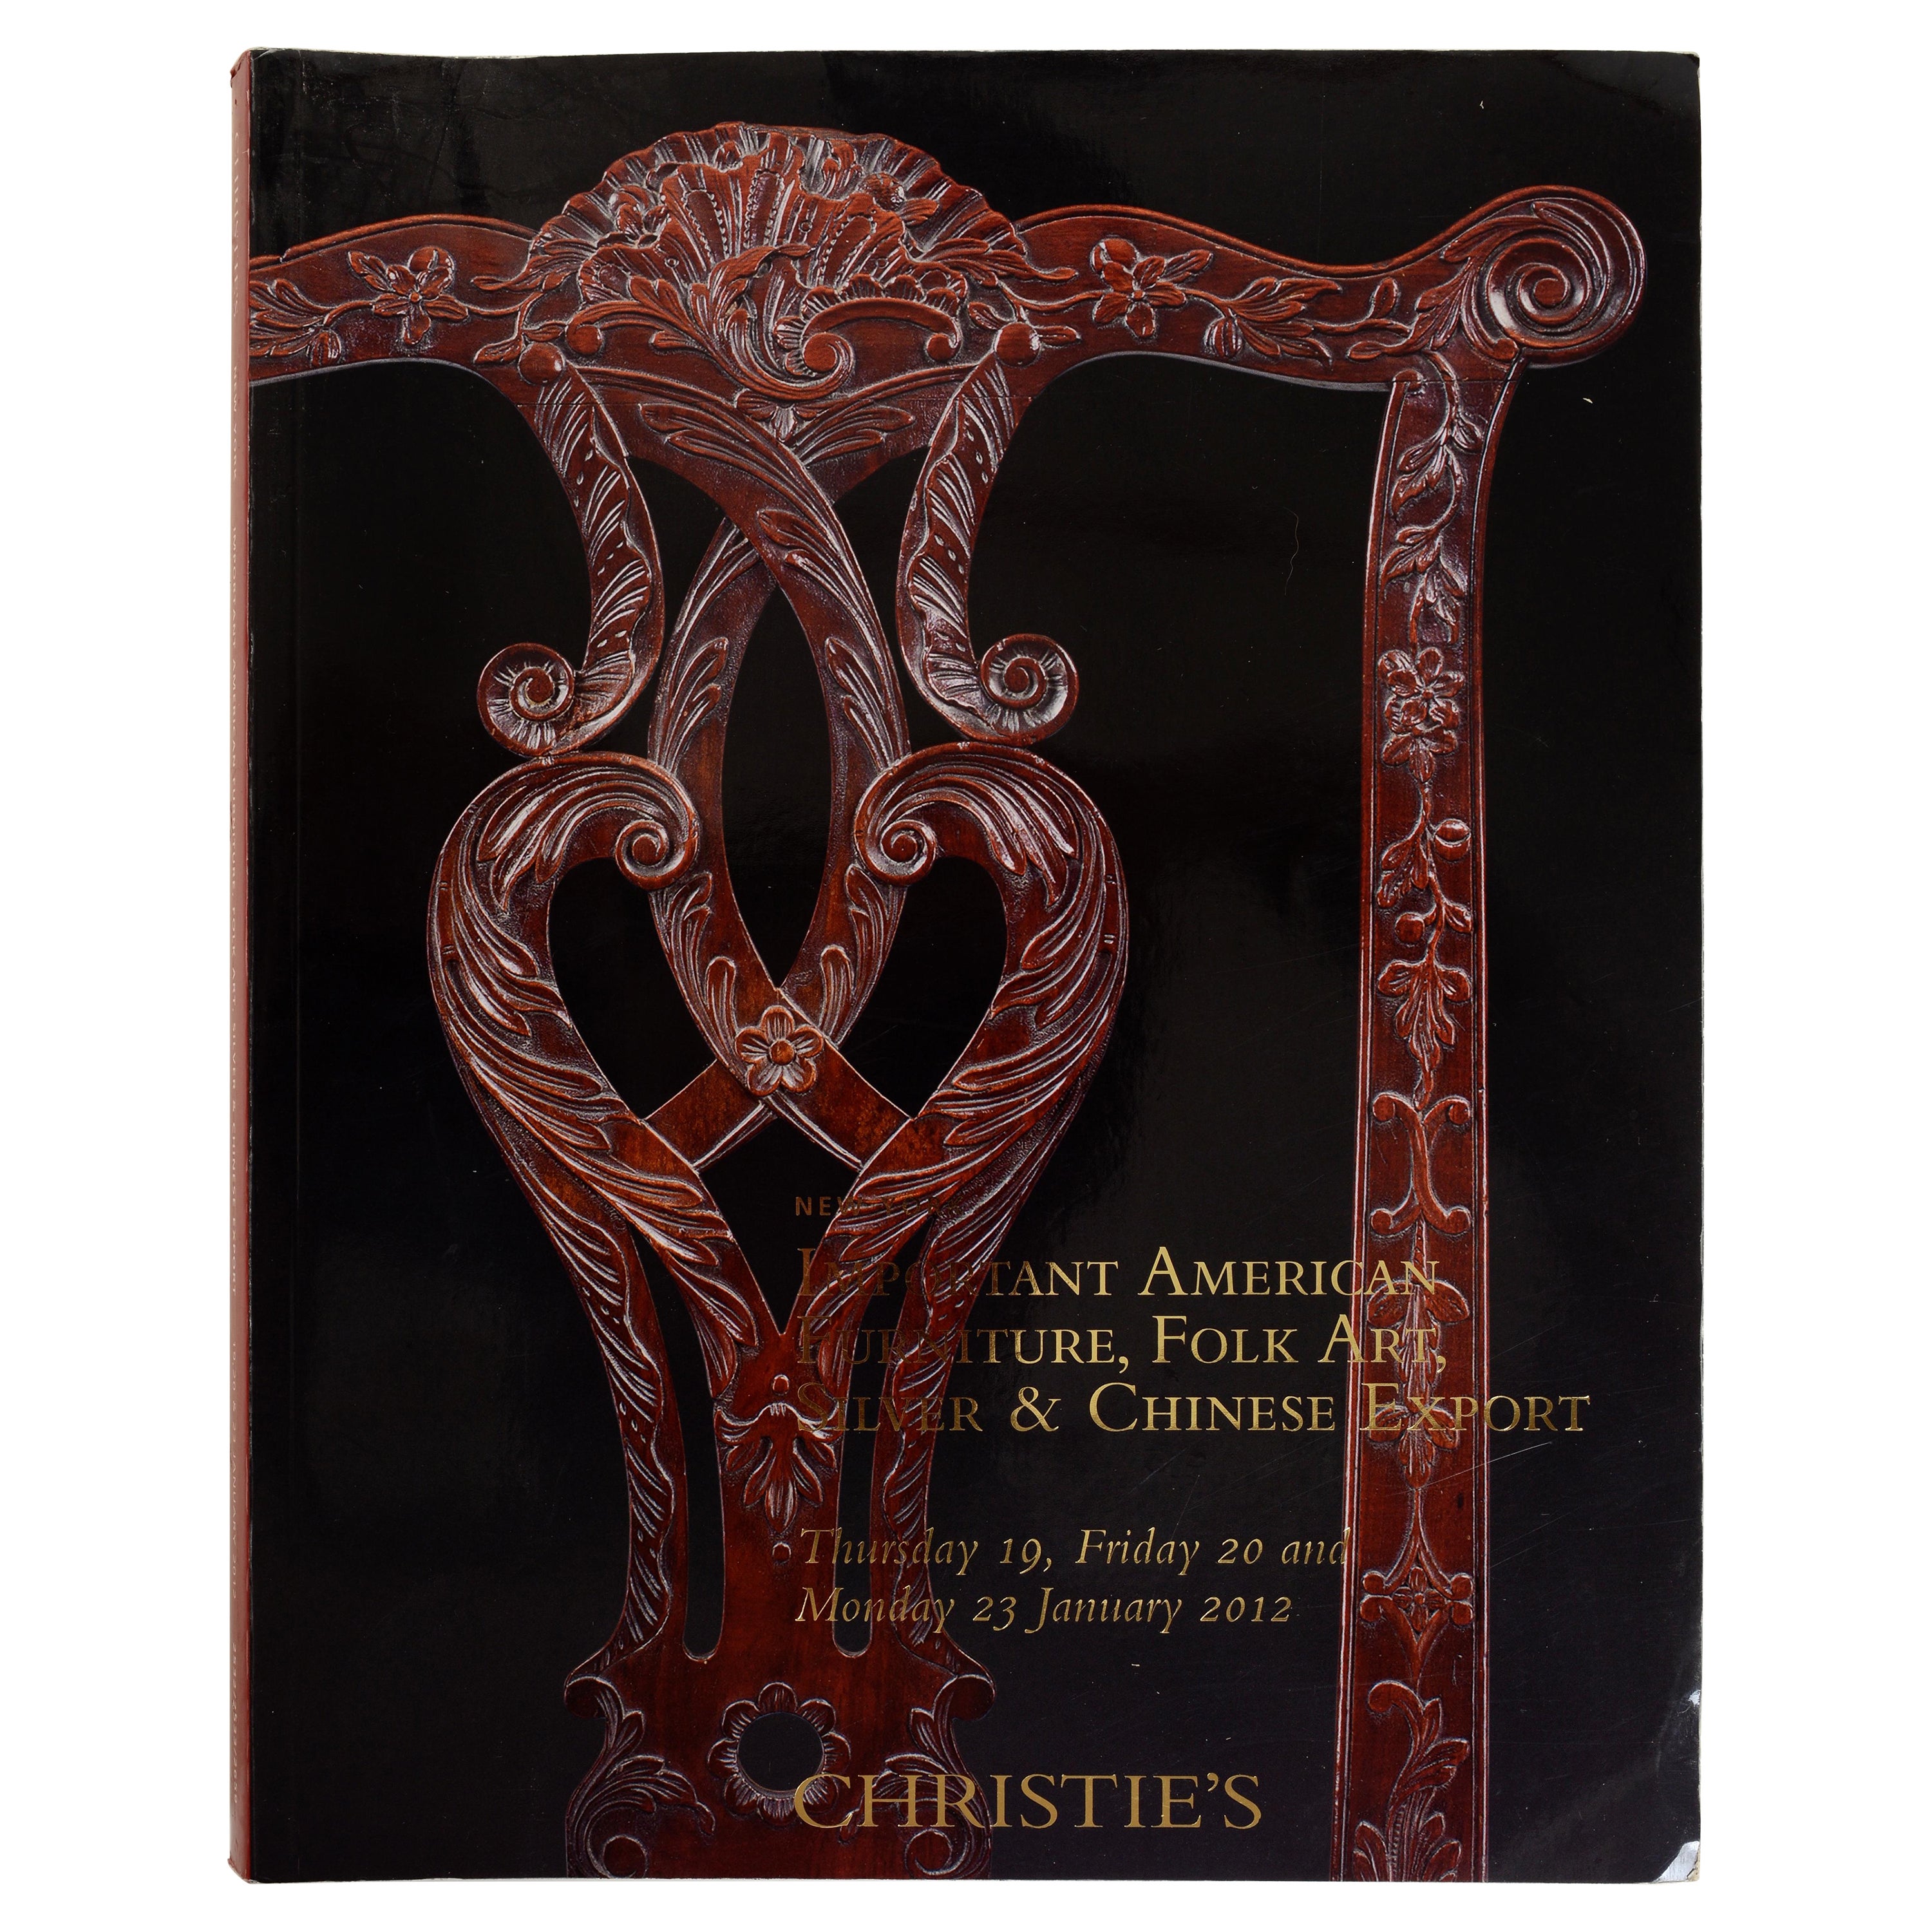 Christies 2012 Wichtige amerikanische Möbel, Chinesischer Export, 1. Ed.